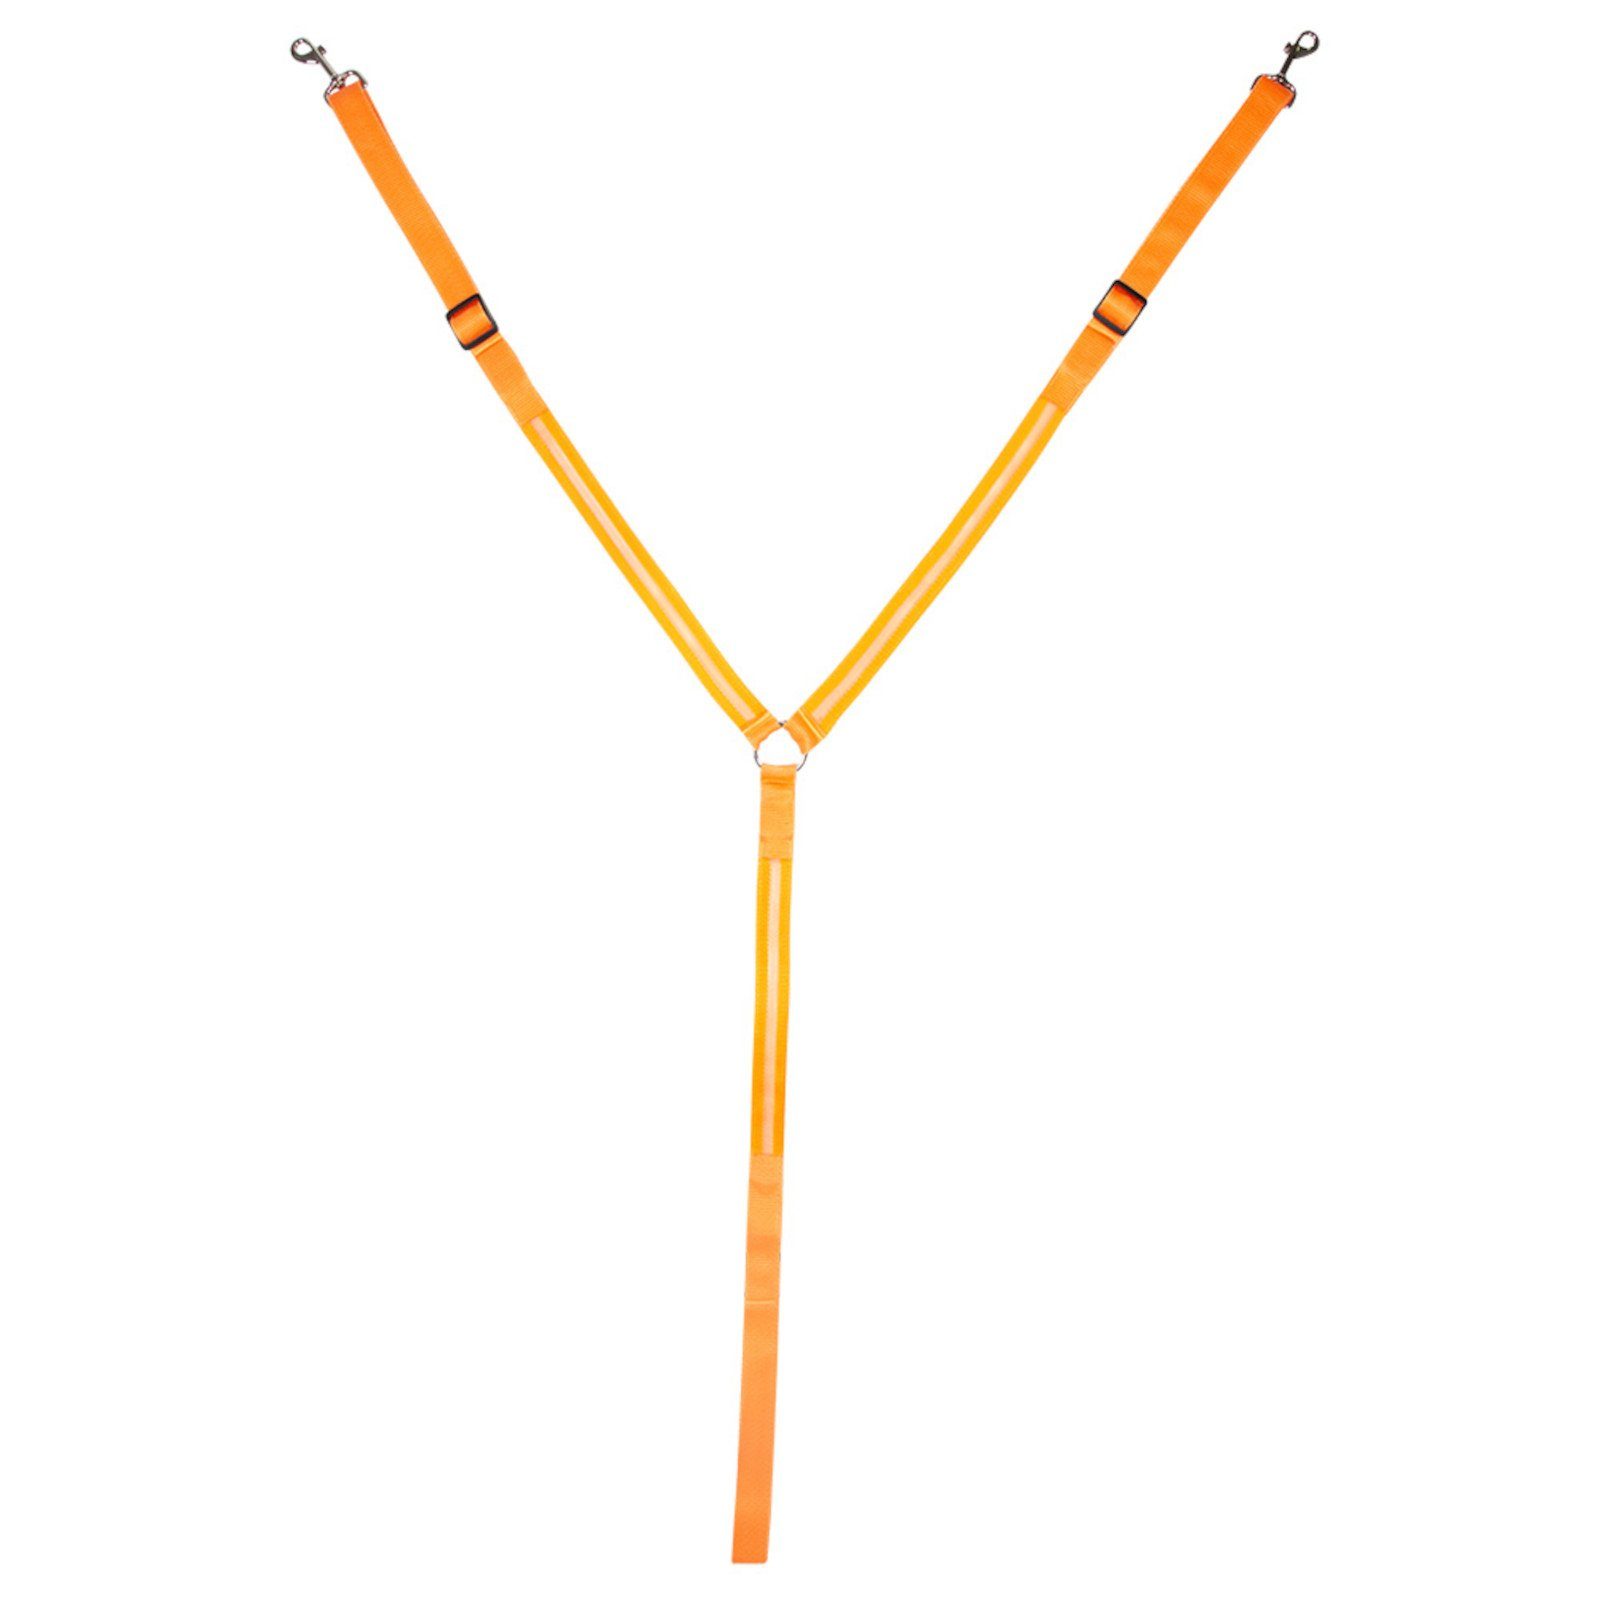 Aufstiegschance PFIFF Vorderzeug Pfiff LED Reflektions-Vorderzeug - - orange Warmblut, - (orange Warmblut)